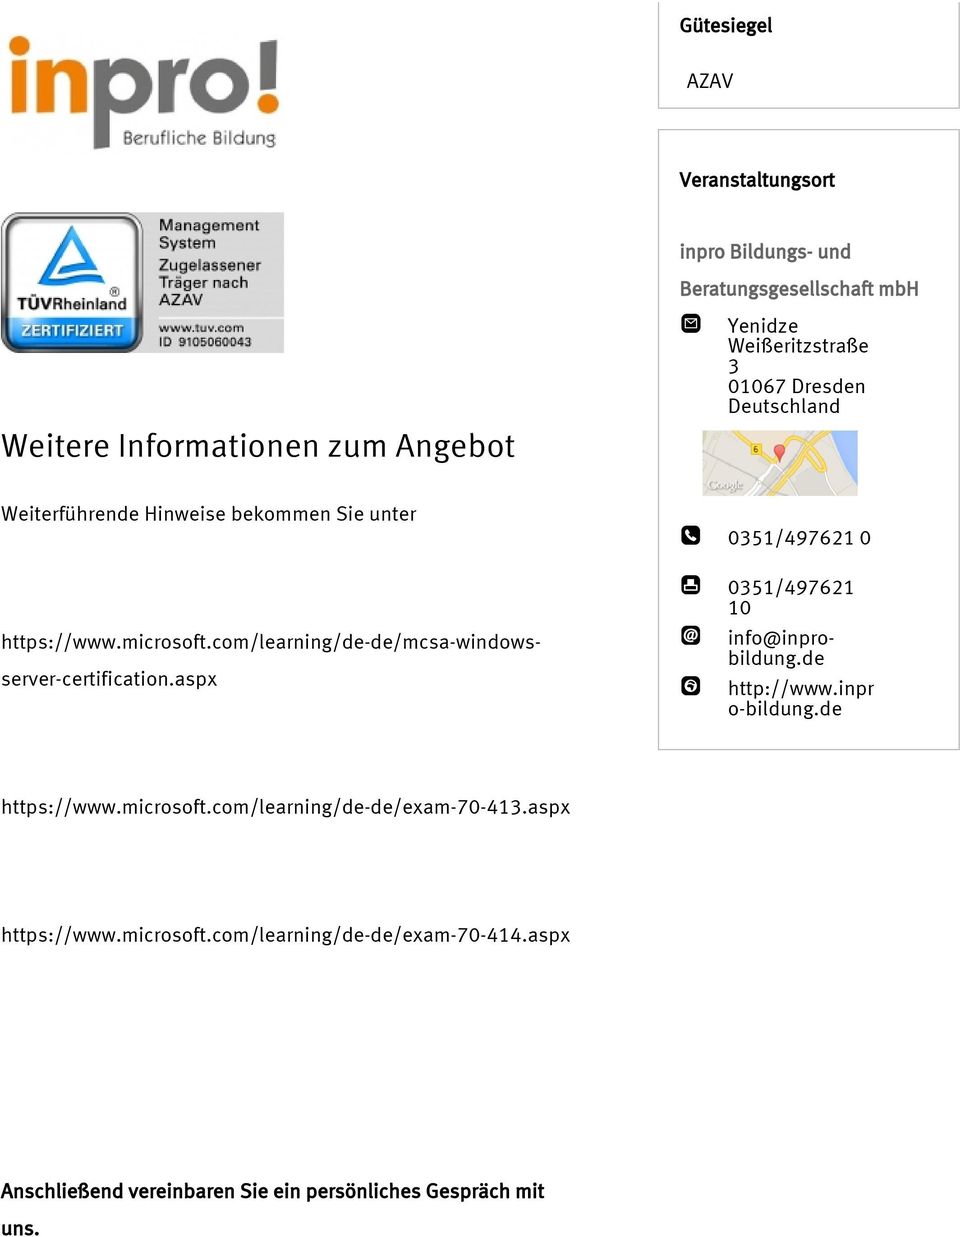 com/learning/de-de/mcsa-windowsserver-certification.aspx 0351/497621 0 0351/497621 10 info@inprobildung.de http://www.inpr o-bildung.